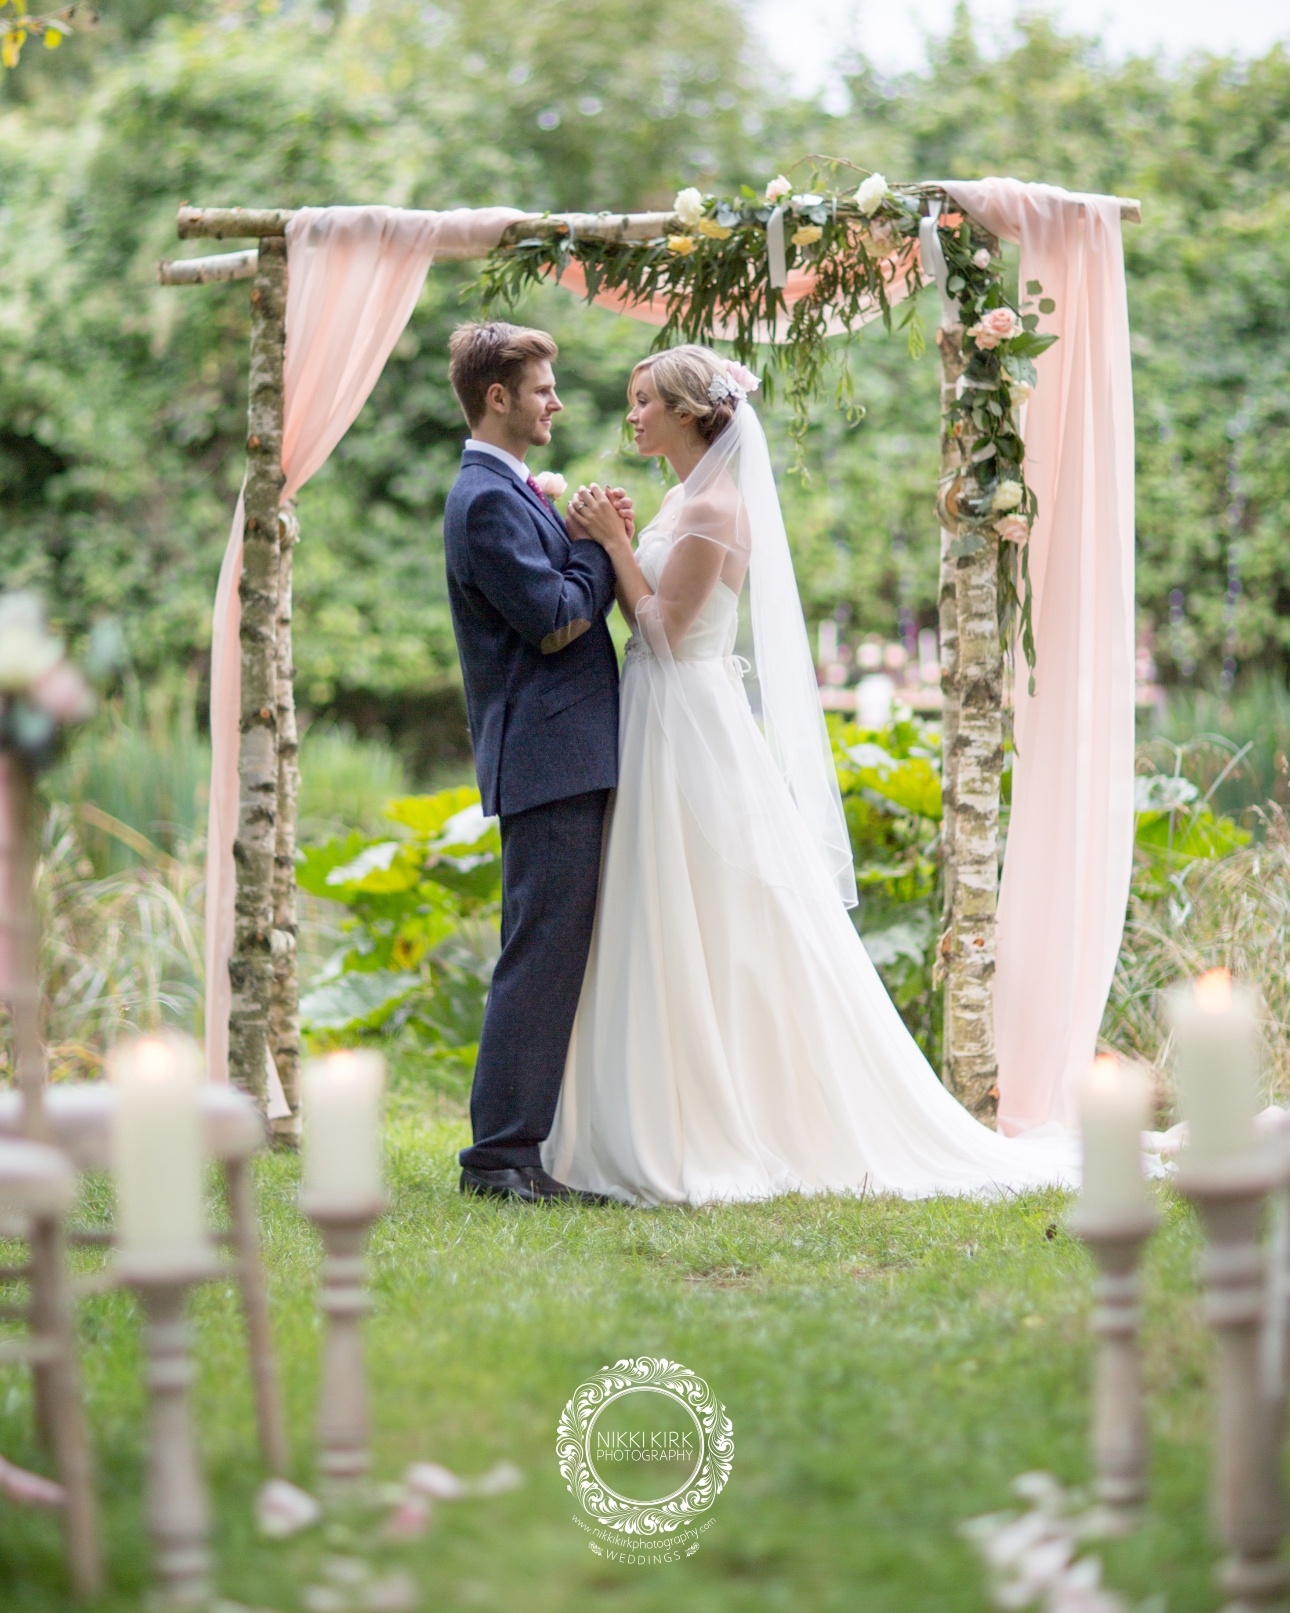 Gloucestershire-based real wedding photographer Nikki Kirk unveils Wedding Pledge Day: Image 1